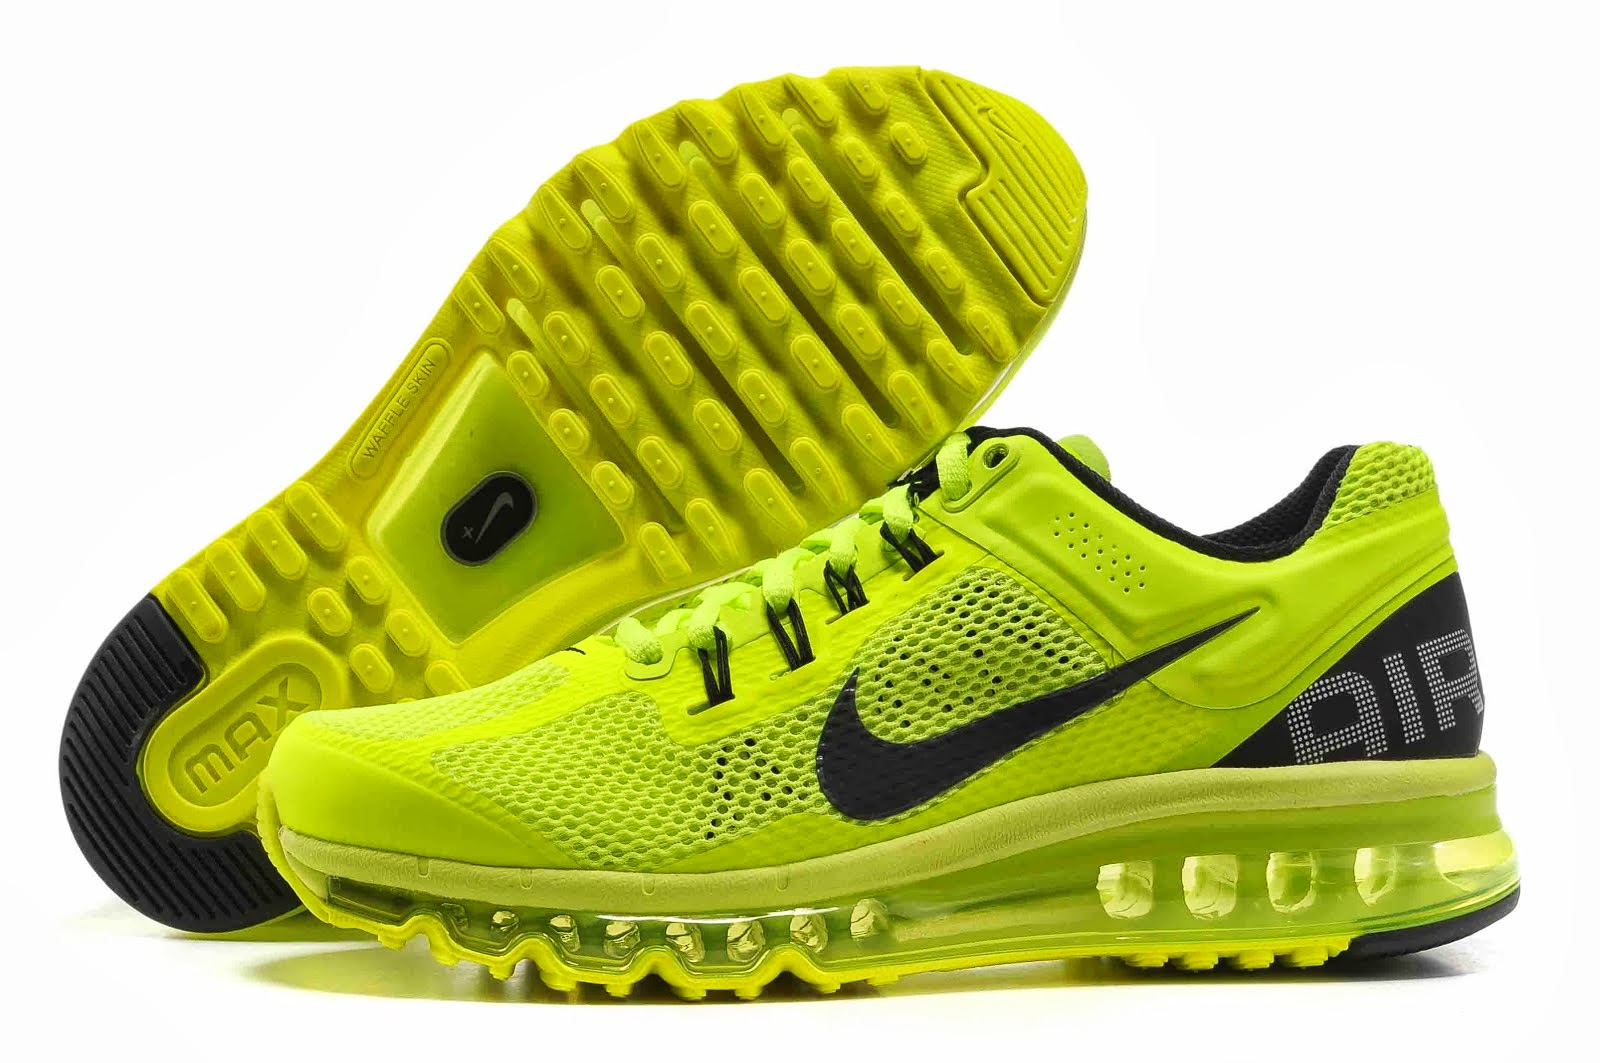 Best Deals Nike Shoes: Hommes Nike Chaussures Noir Fluorescentes